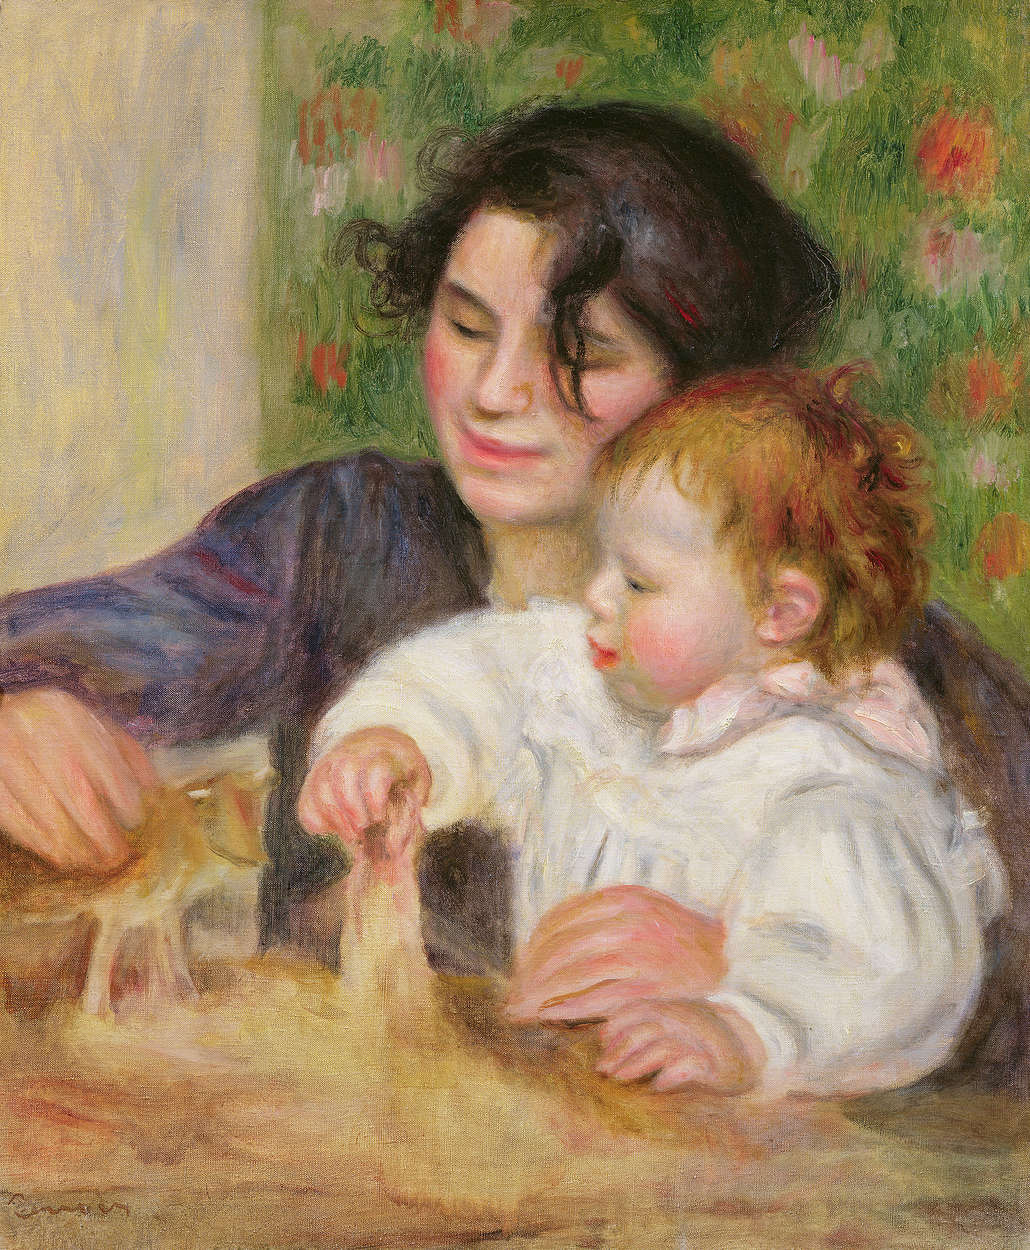             Fototapete "Gabrielle und Jean" von Pierre Auguste Renoir
        